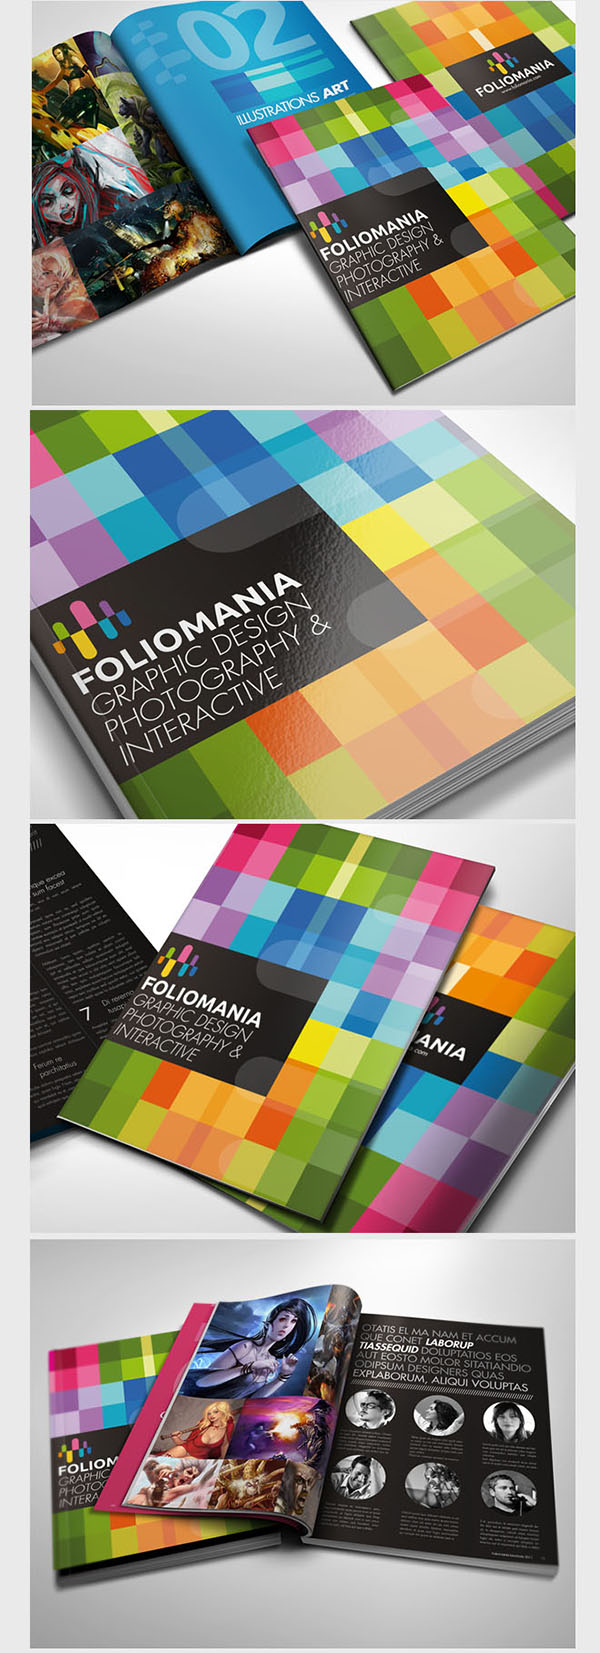 1-foliomania-portfolio-brochure-24